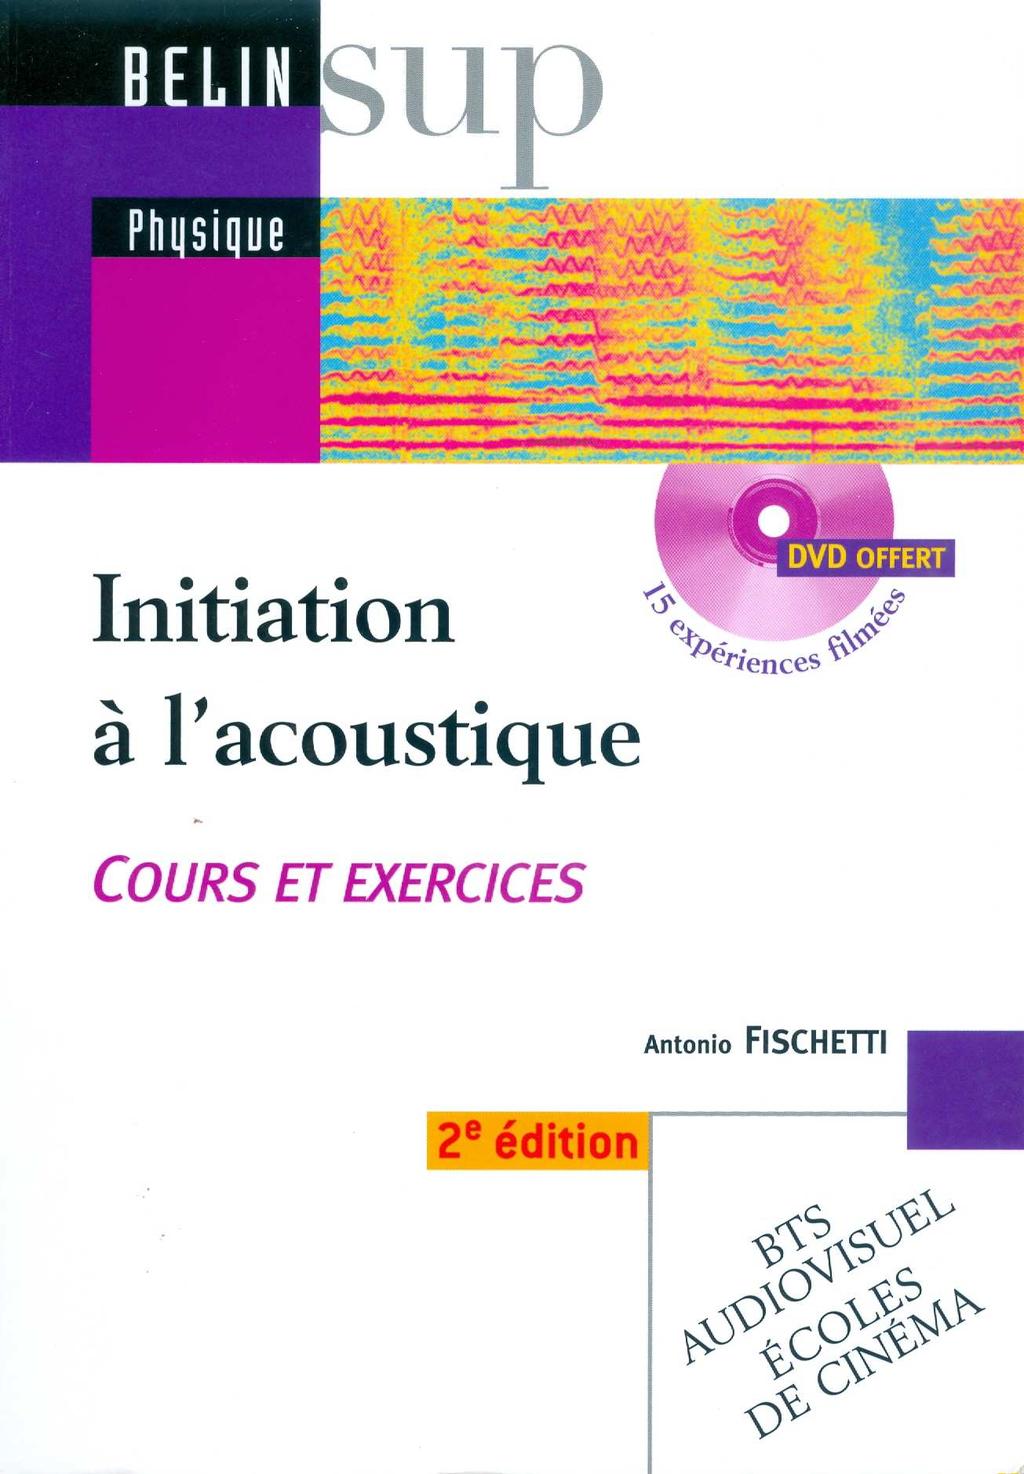 Fischetti Initiation à l acoustique (Belin, Paris, 2003) Chap 1 Nature des phenomenes sonores Chap 3-5 Acoustique architecturale Caracteristiques d une salle Critères